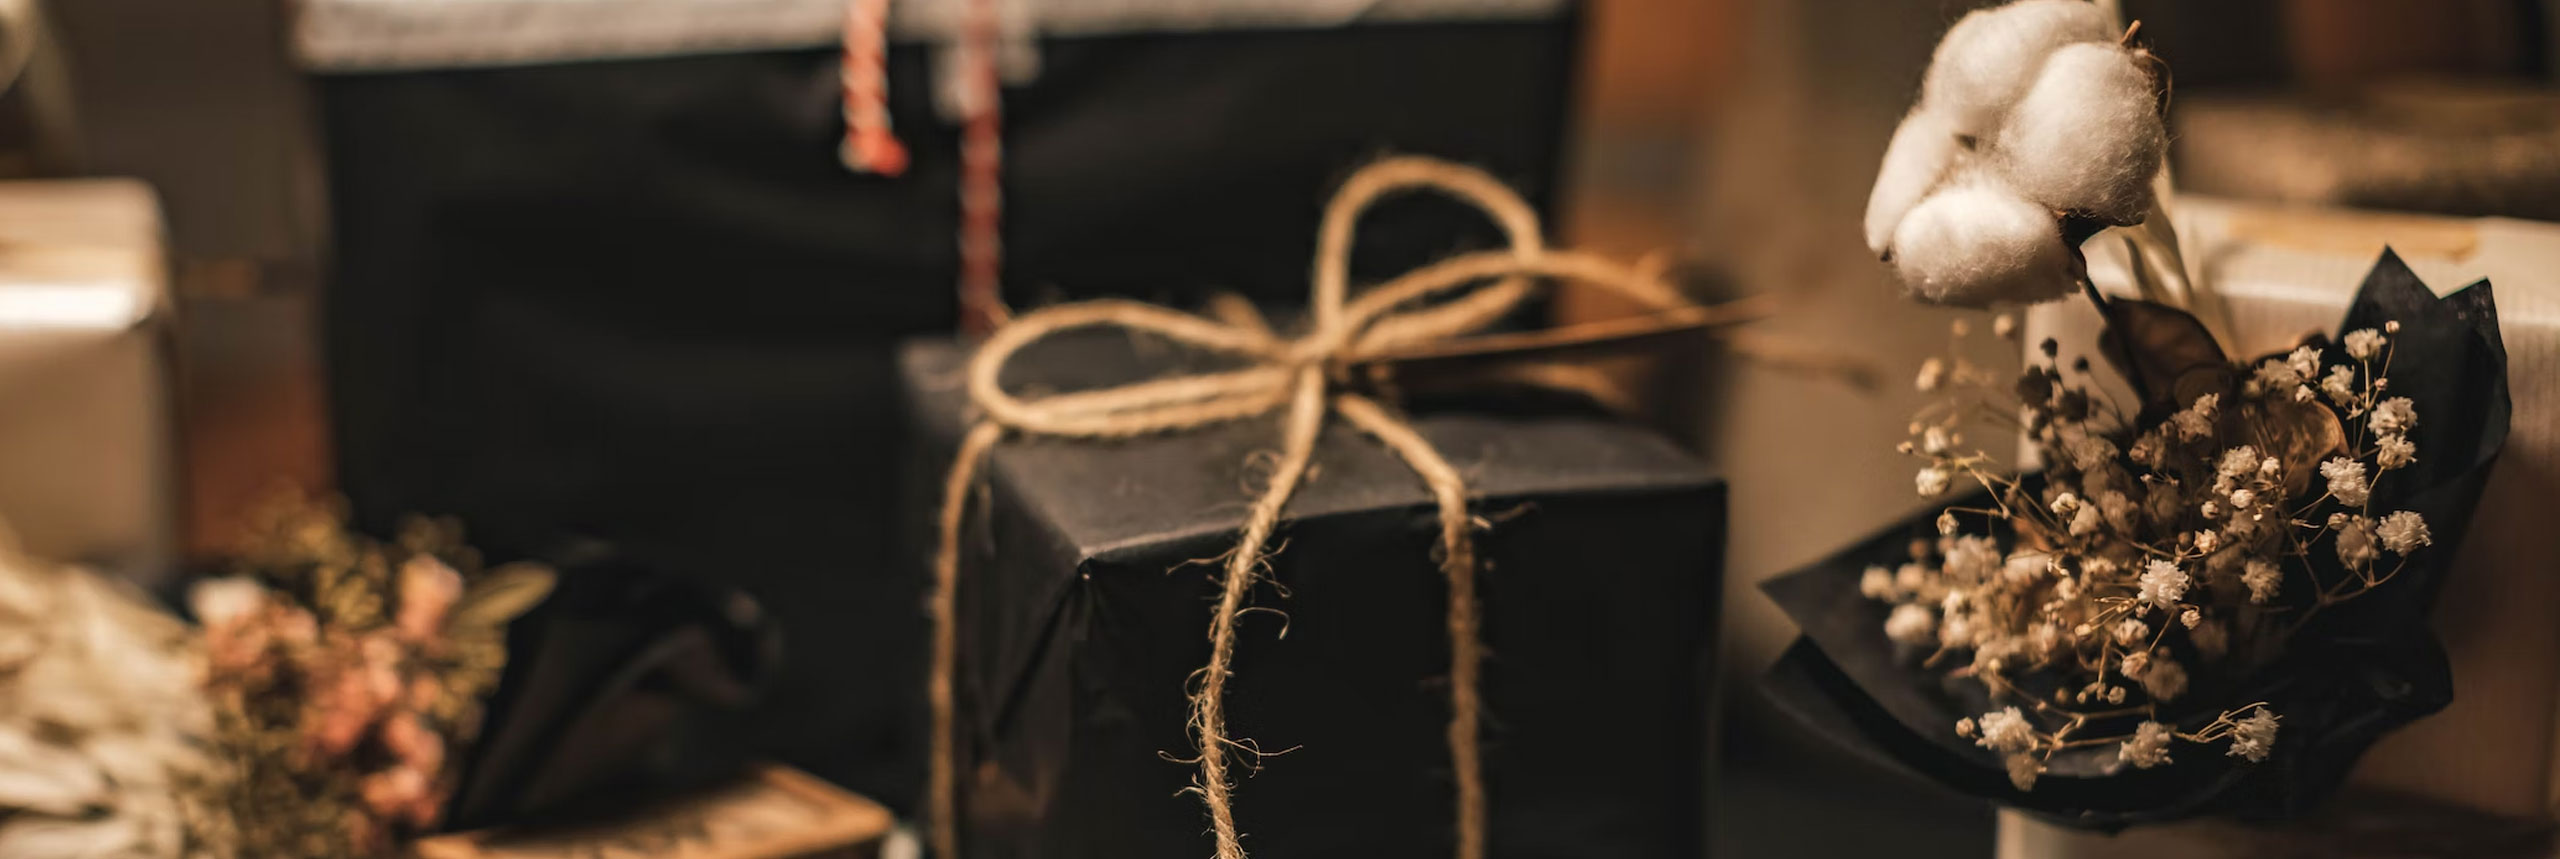 Noël : 40 idées de cadeaux à offrir à un ado pour lui faire